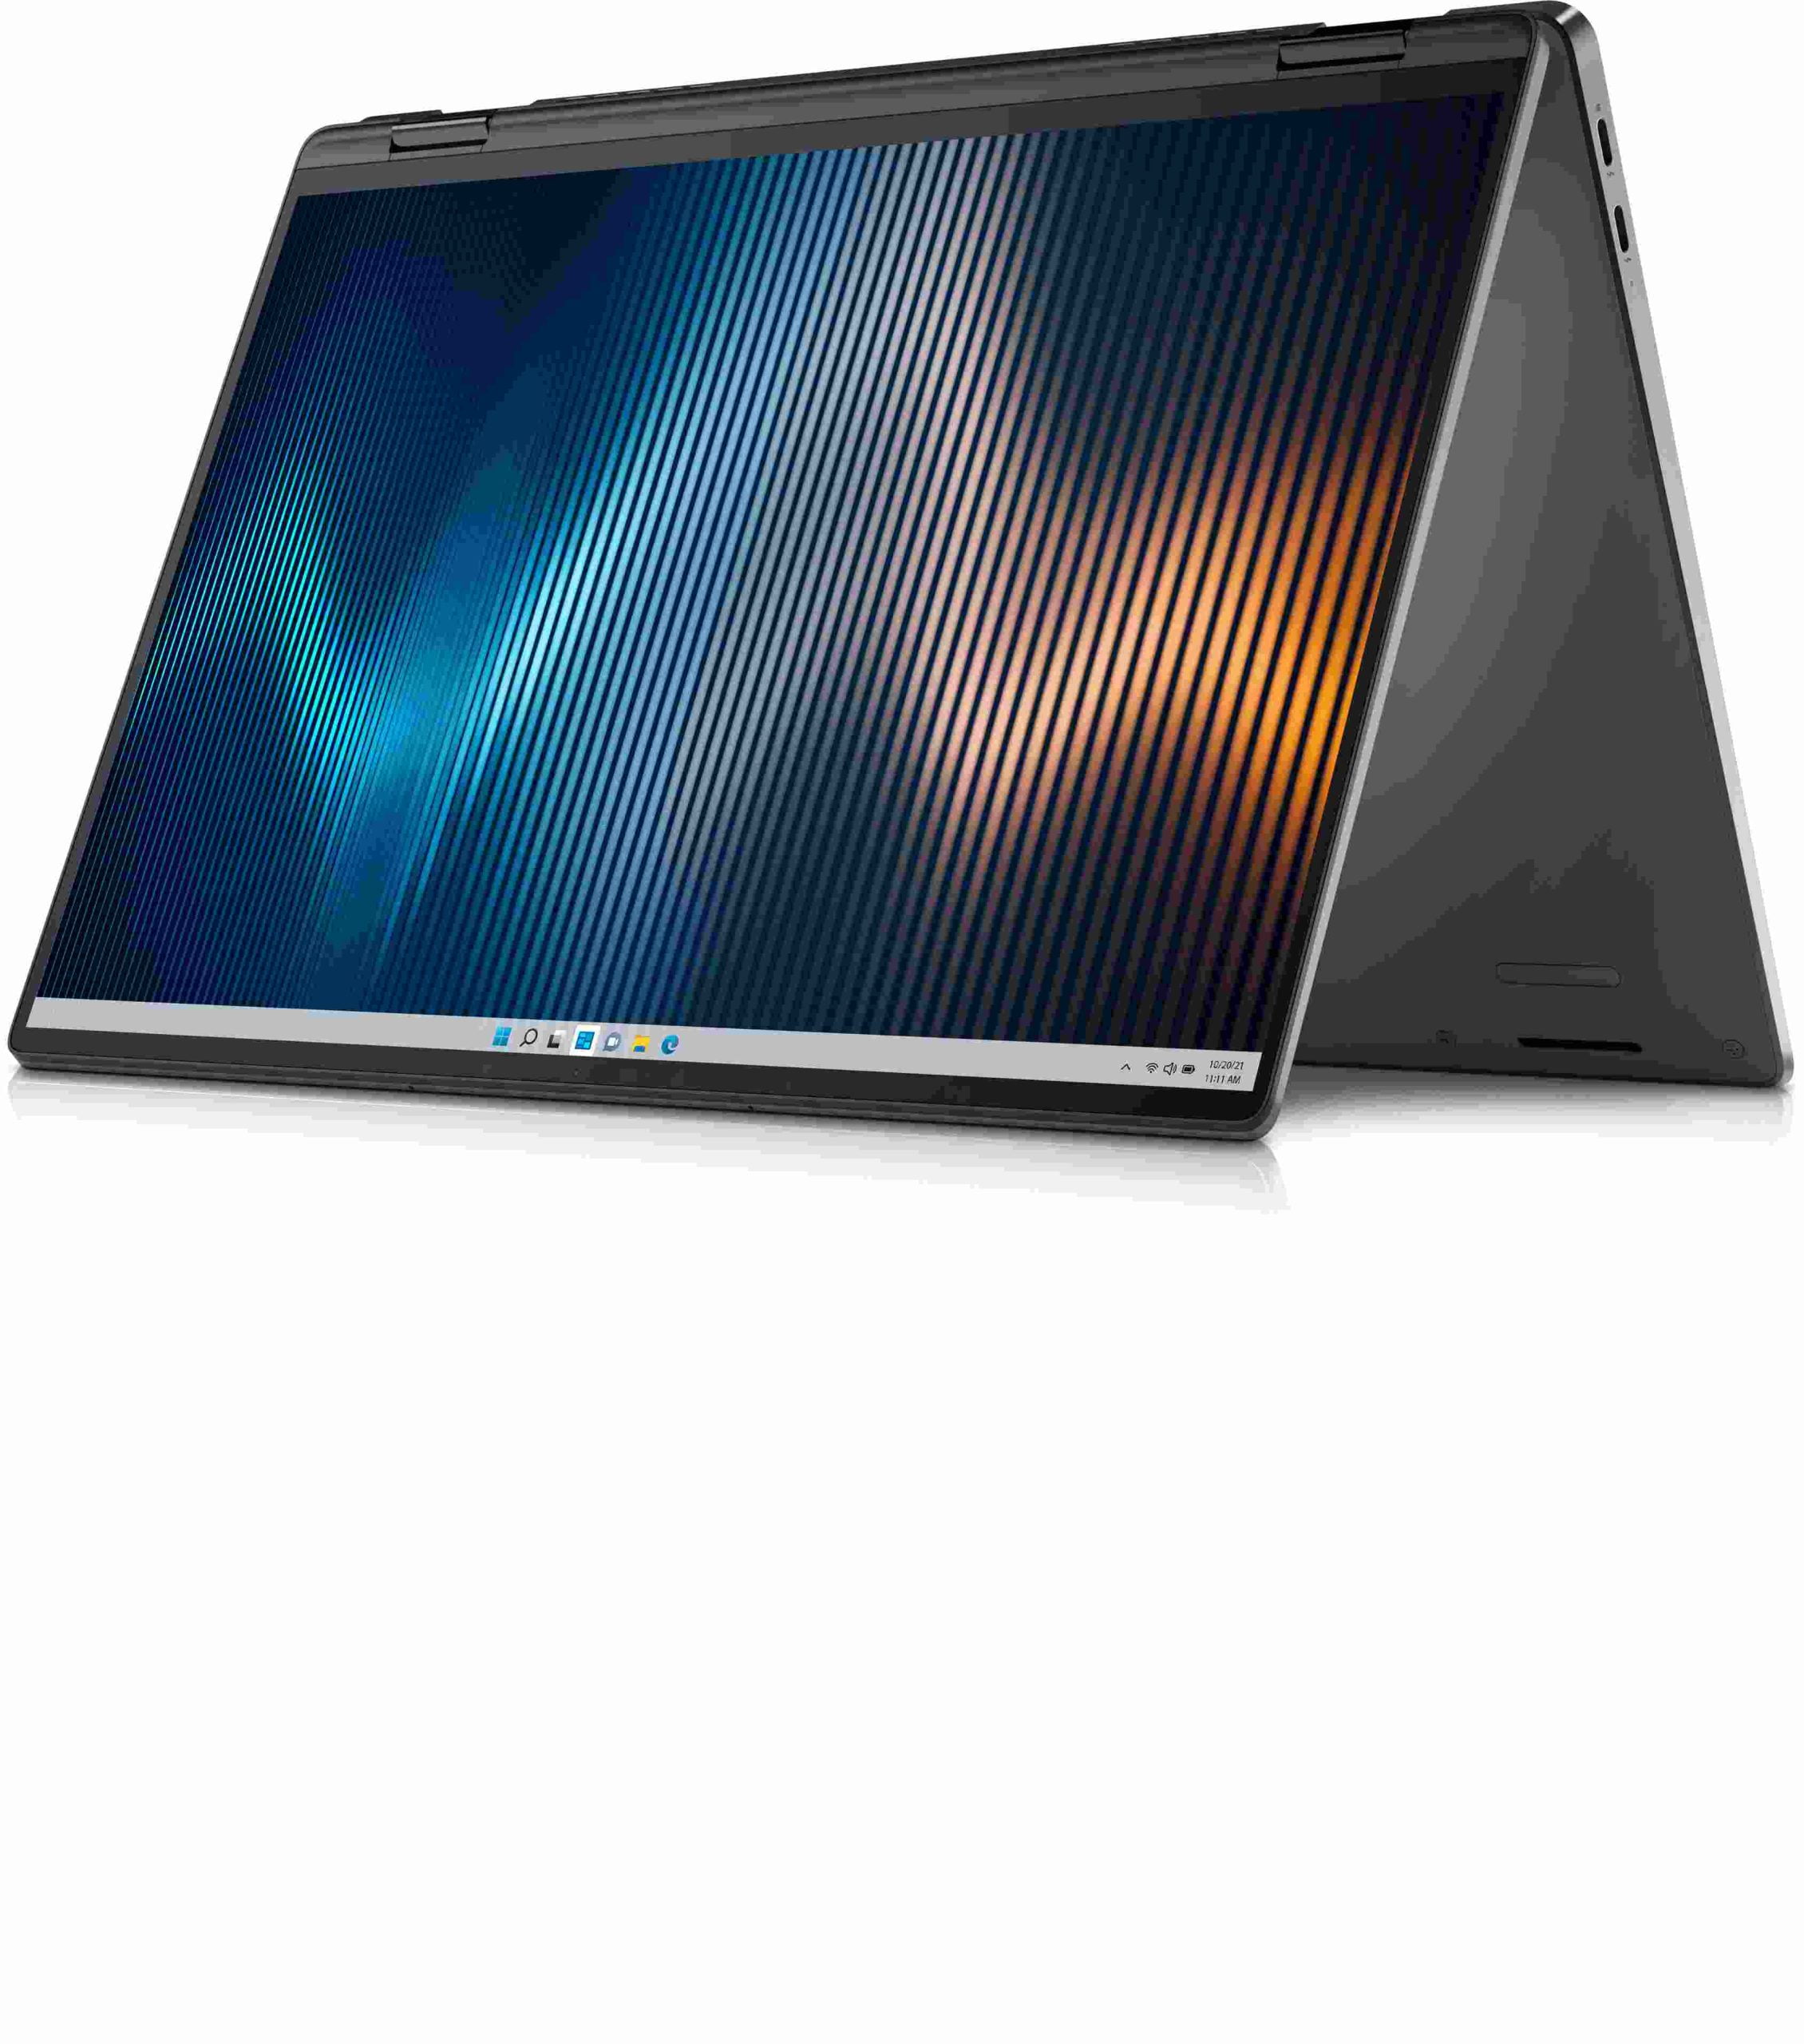 Dell presenta una nueva generación de notebooks y workstations